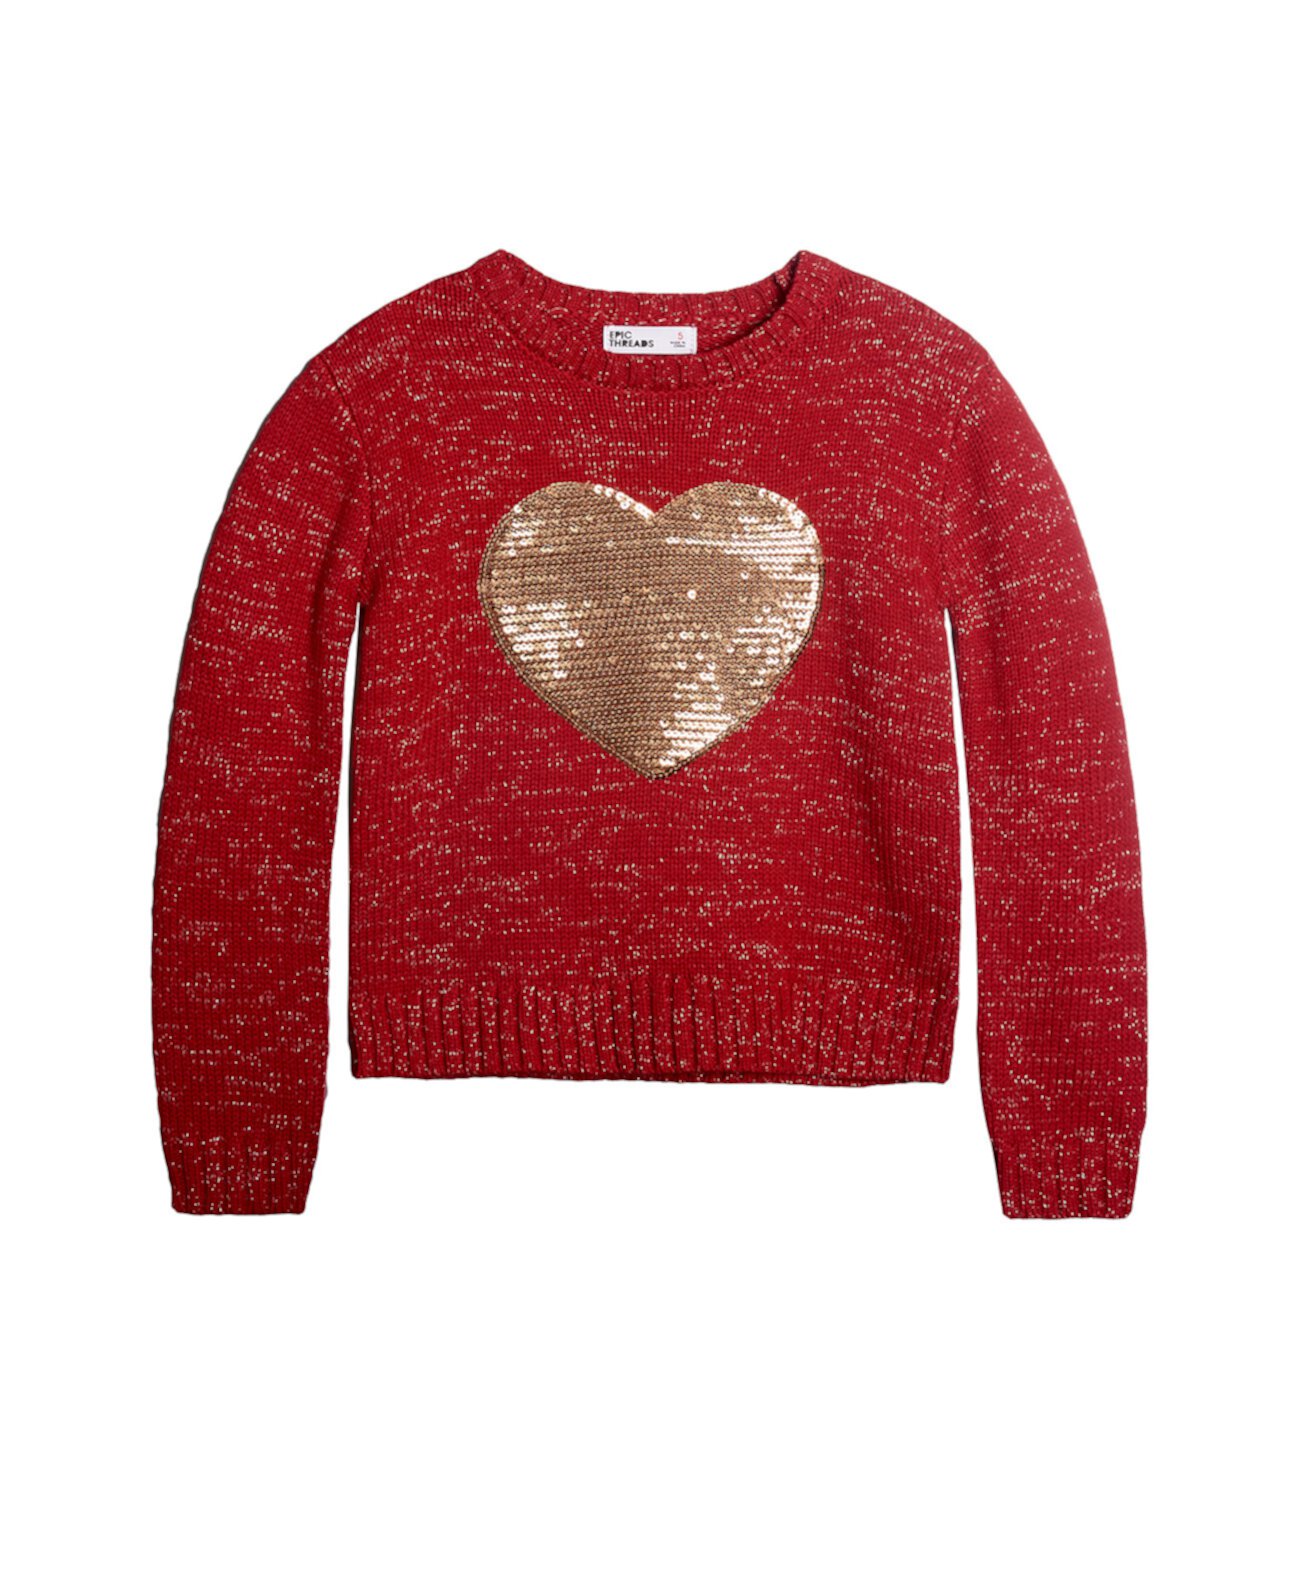 Свитер Little Girls Glitter Heart Sweater, созданный для Macy's Epic Threads